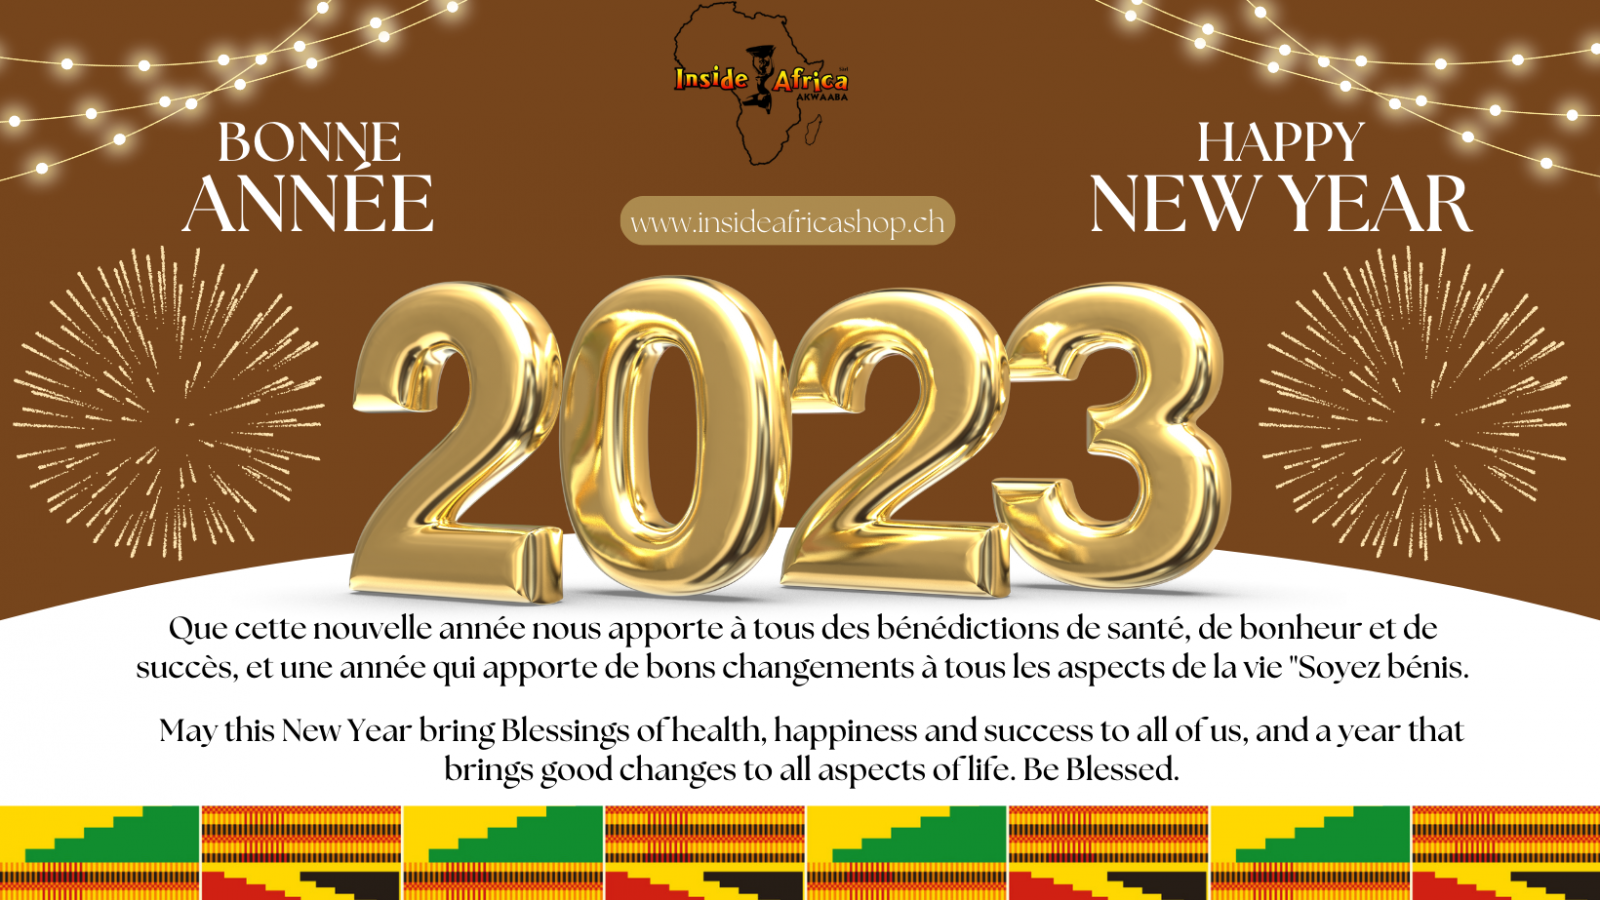 Inside Africa souhaite Bonne Année 2023 Meilleures voeux pour 2023